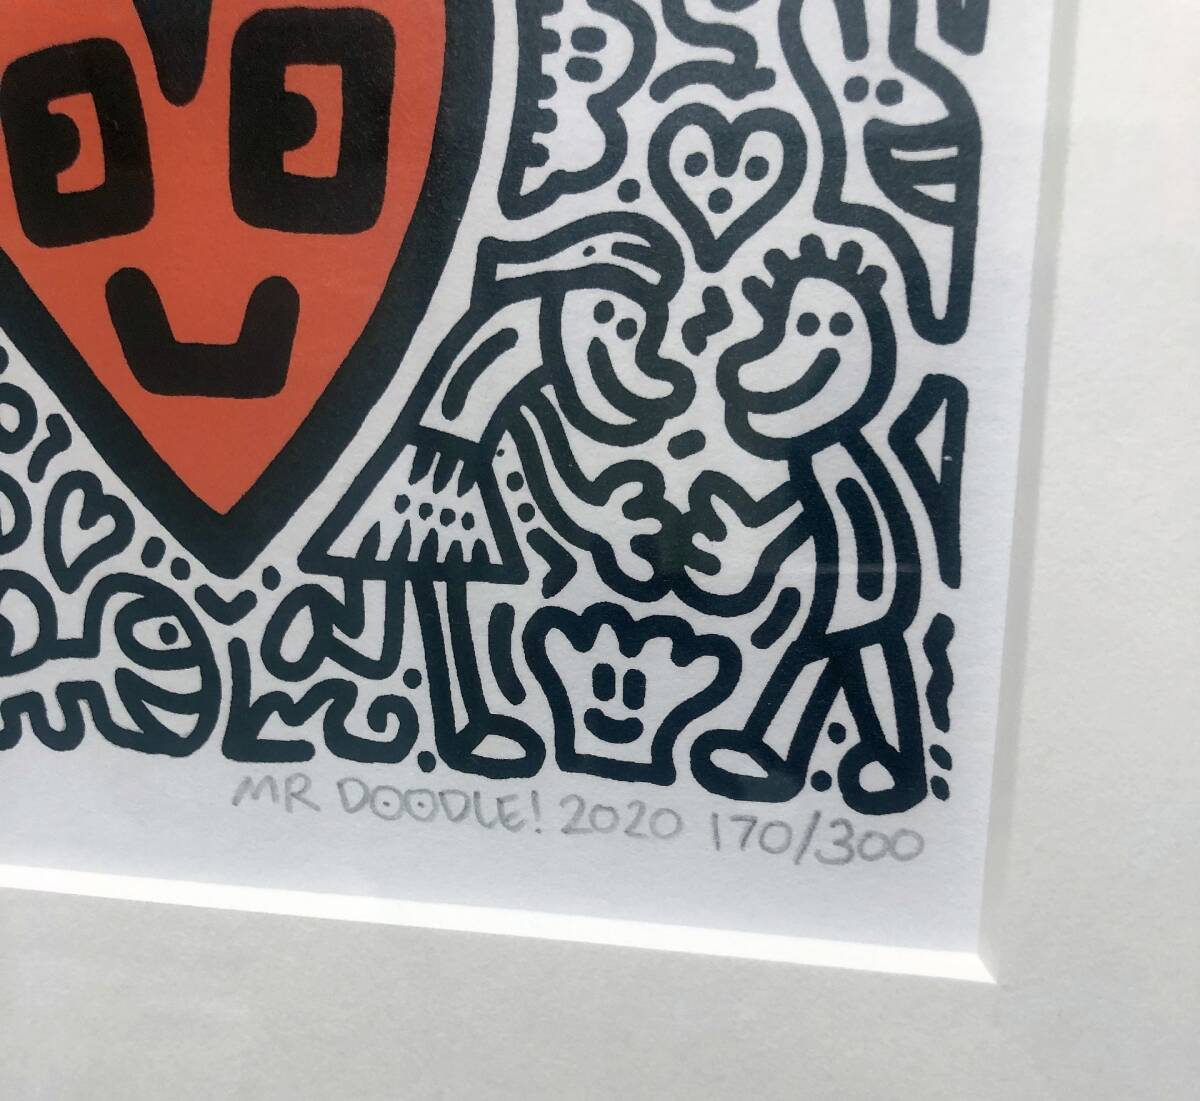 ◆Mr.Doodle ミスター・ドゥードゥル Heartland 2020年作 ED:300 シルクスクリーン 版画◆ 現代アート キースヘリング バンクシー_画像3